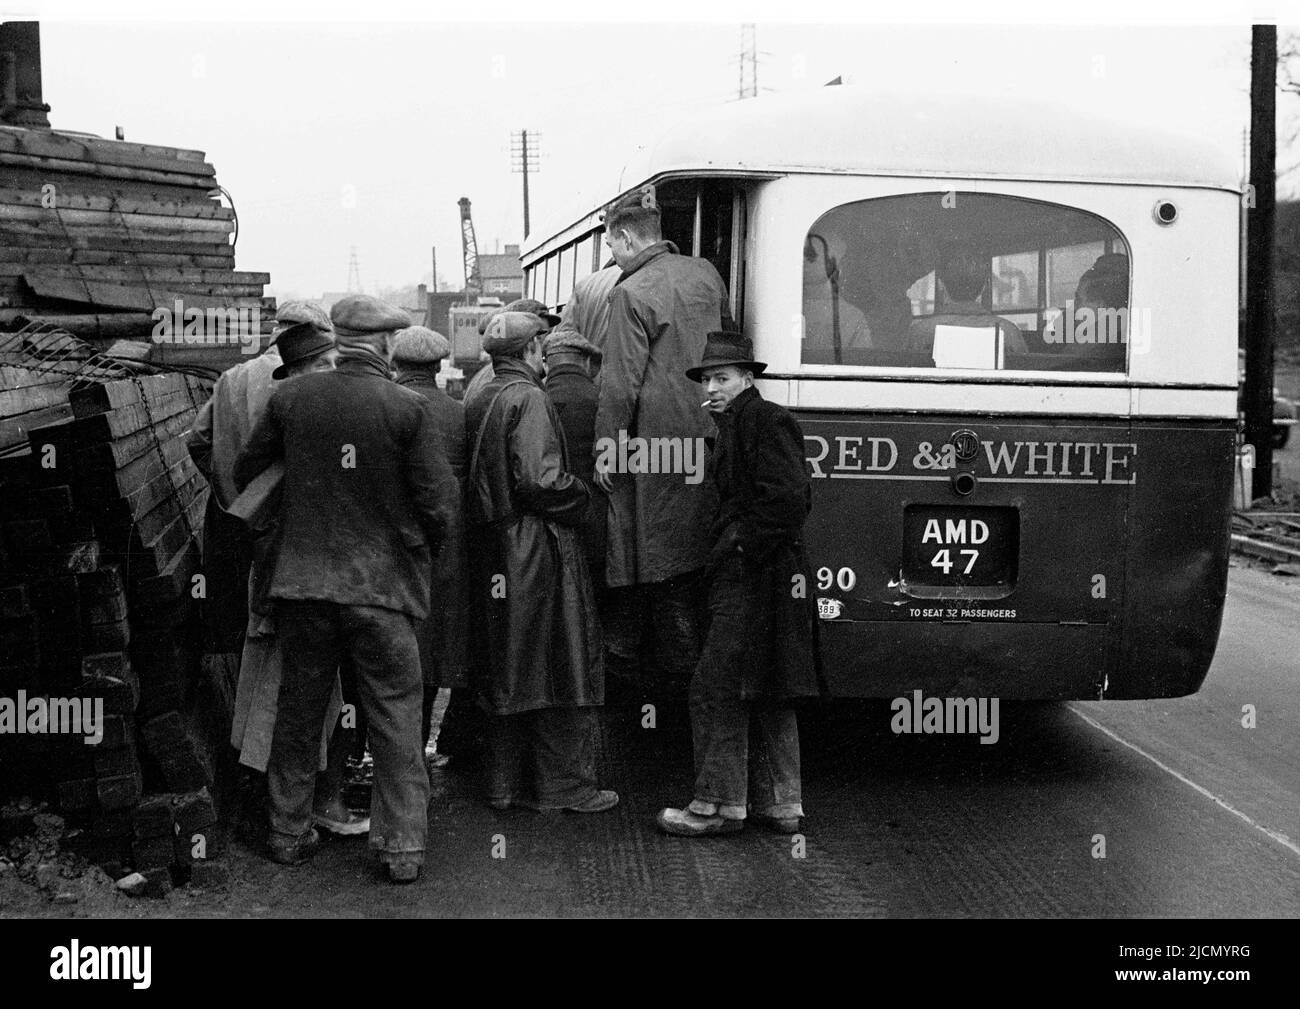 1950s, storici, operai di stoffa capeggiato da una fabbrica vicino Trehafod, Galles del Sud che ottiene su un autobus rosso & bianco dopo la conclusione del turno di una giornata. Fondata nel 1929, Red & White Services è stata una famosa compagnia di autobus che opera in tutto il Galles del Sud in quest'epoca. Foto Stock